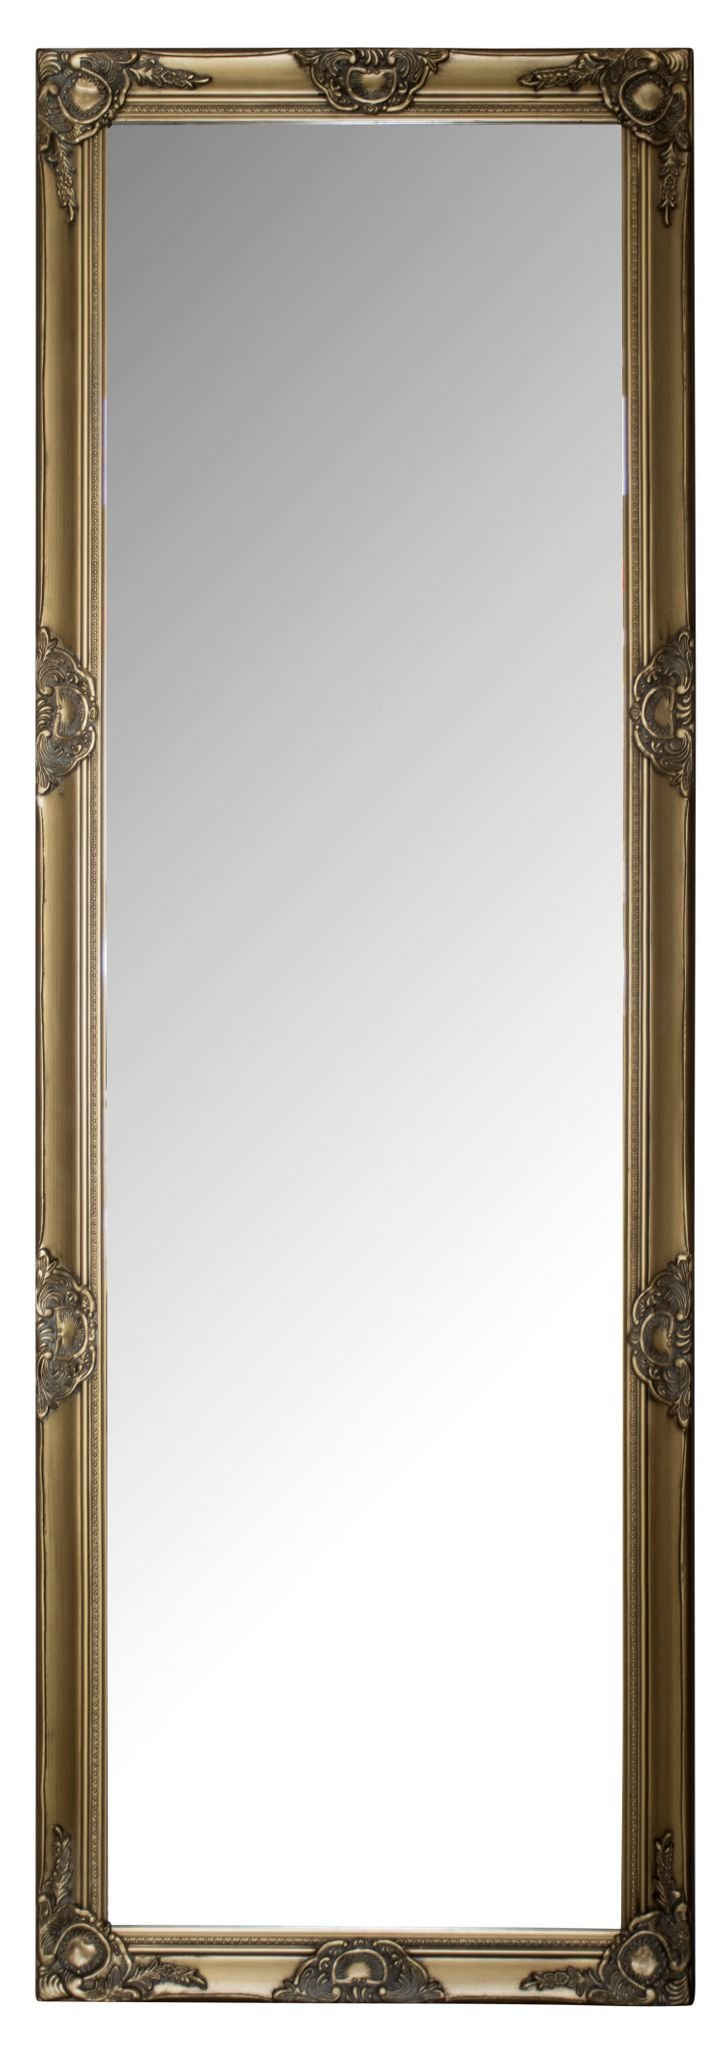 elbmöbel Wandspiegel Spiegel gold 187cm, Spiegel: Wandspiegel 187x62x7 cm gold Vintage